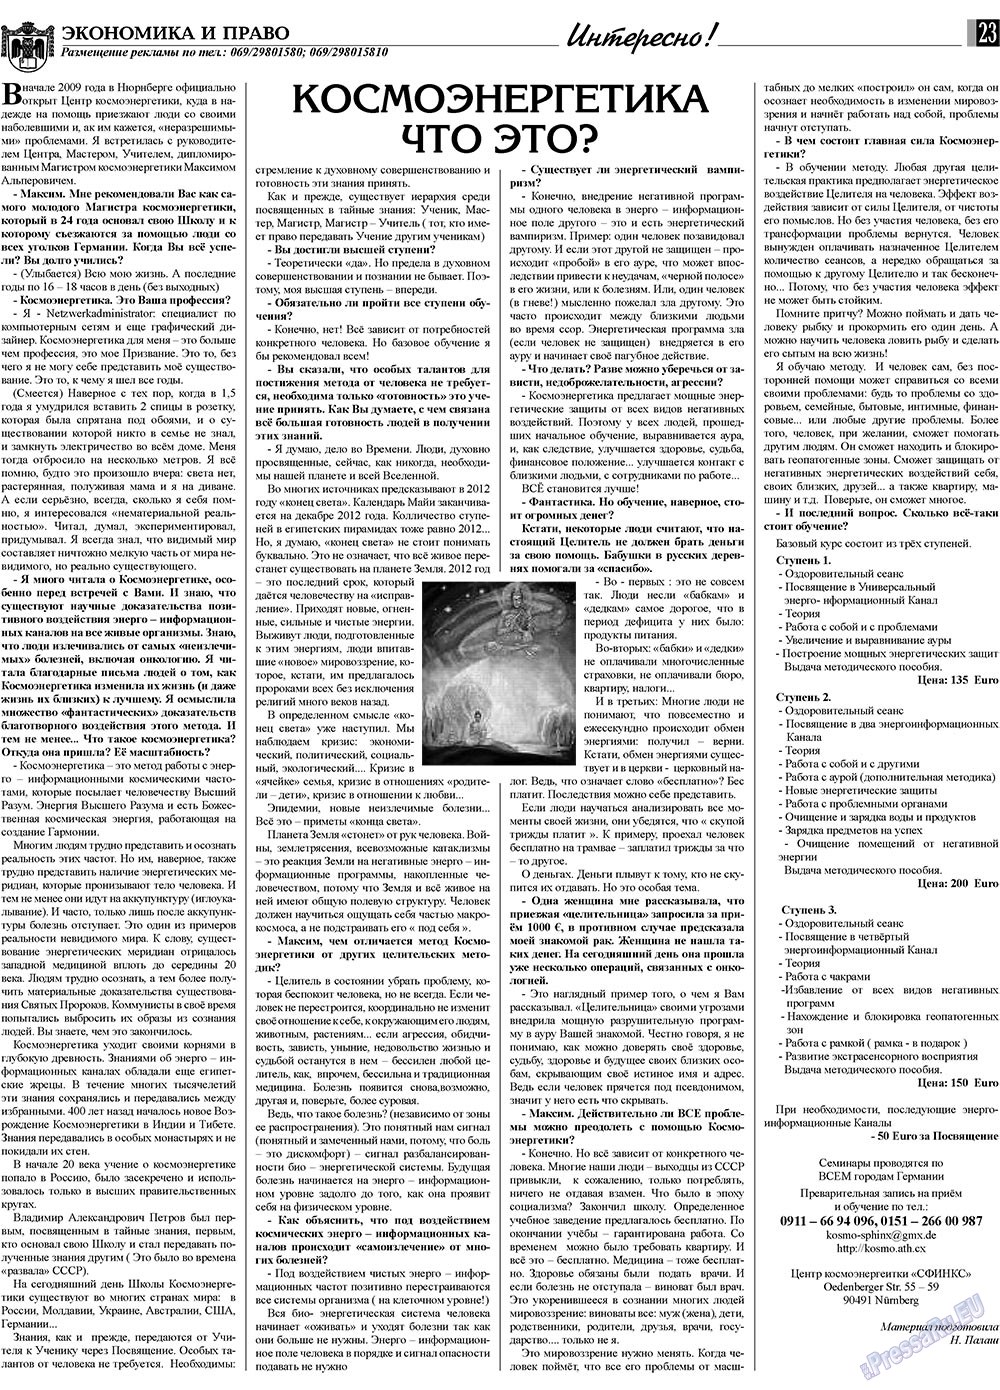 Экономика и право, газета. 2009 №12 стр.23